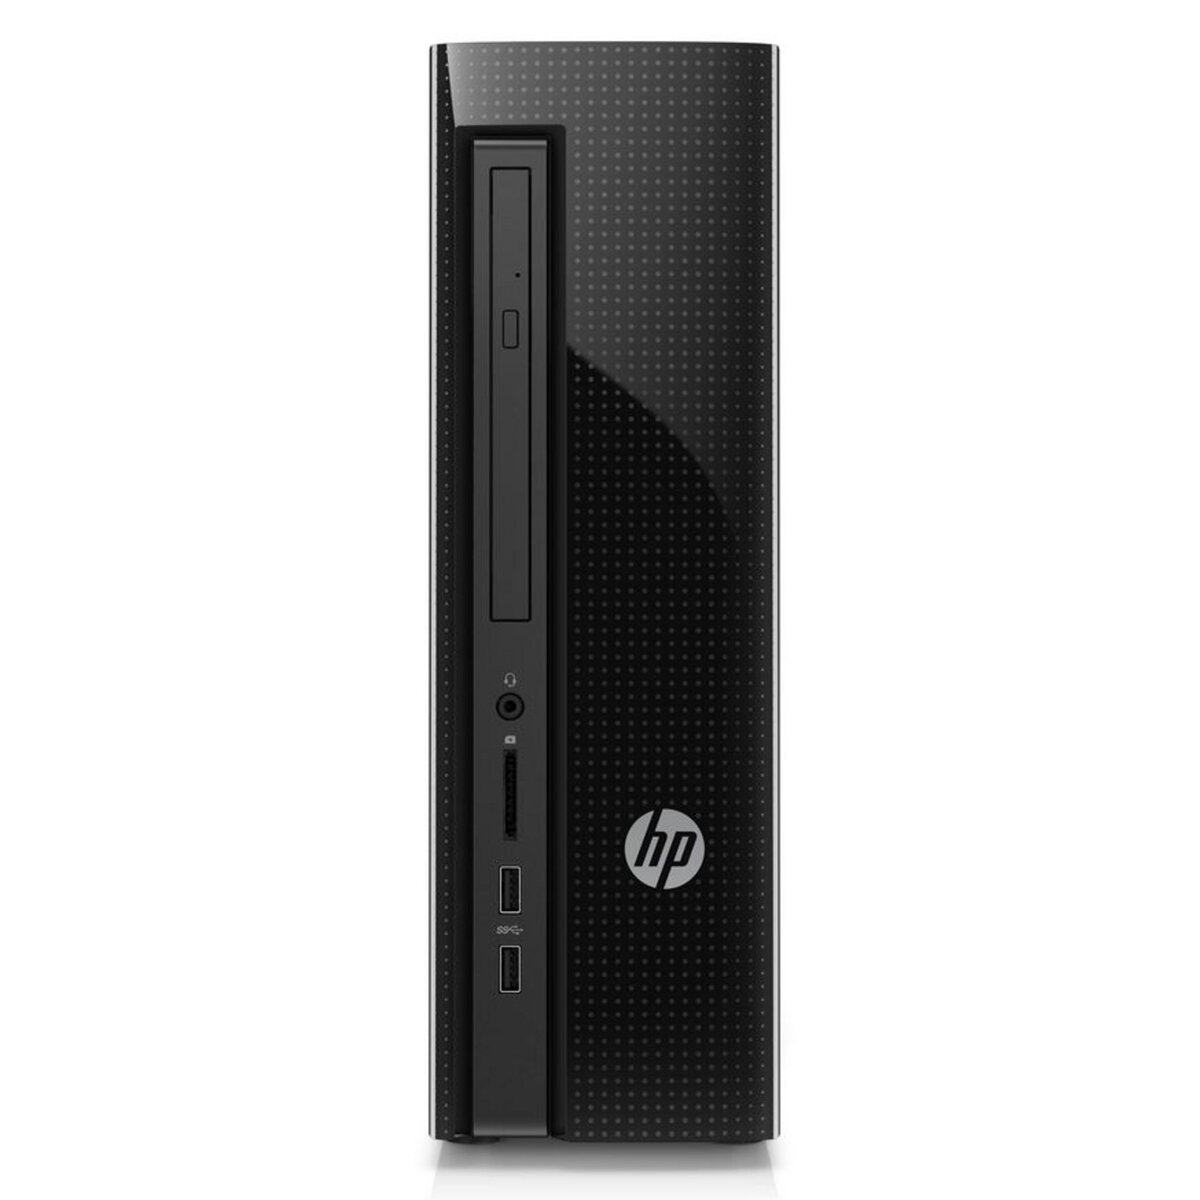 Hewlett Packard Unité centrale - Slimline Desktop 450-a109nf - Noir